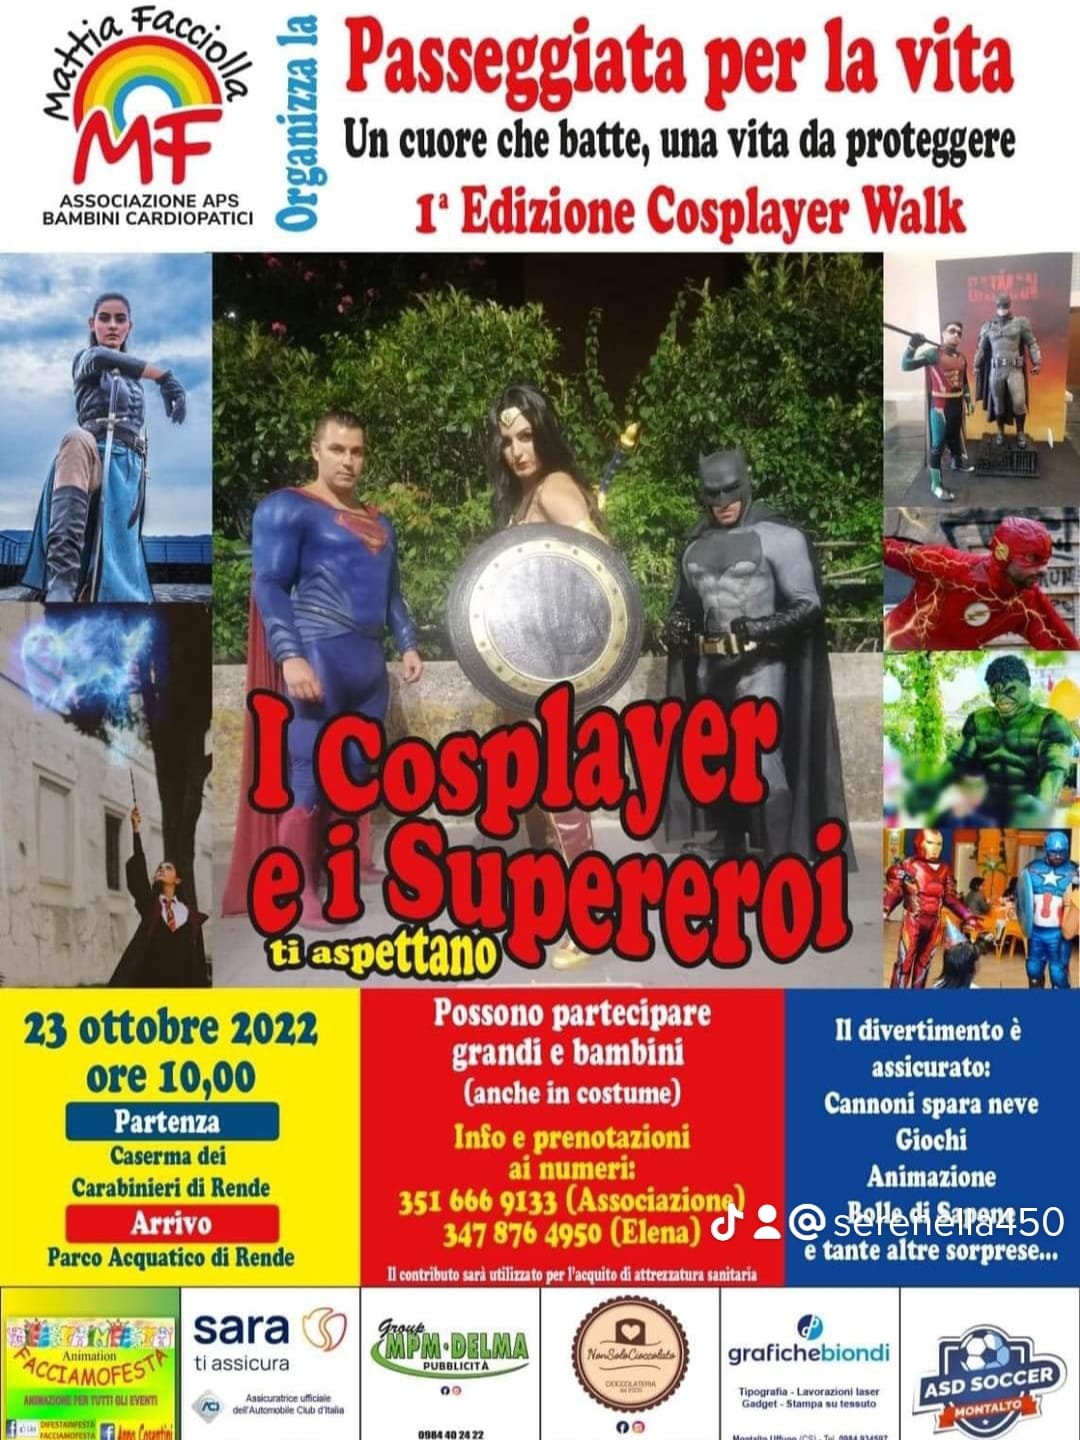 Cosplayer Walk: il 23 ottobre, tutti insieme per una passeggiata per la vita